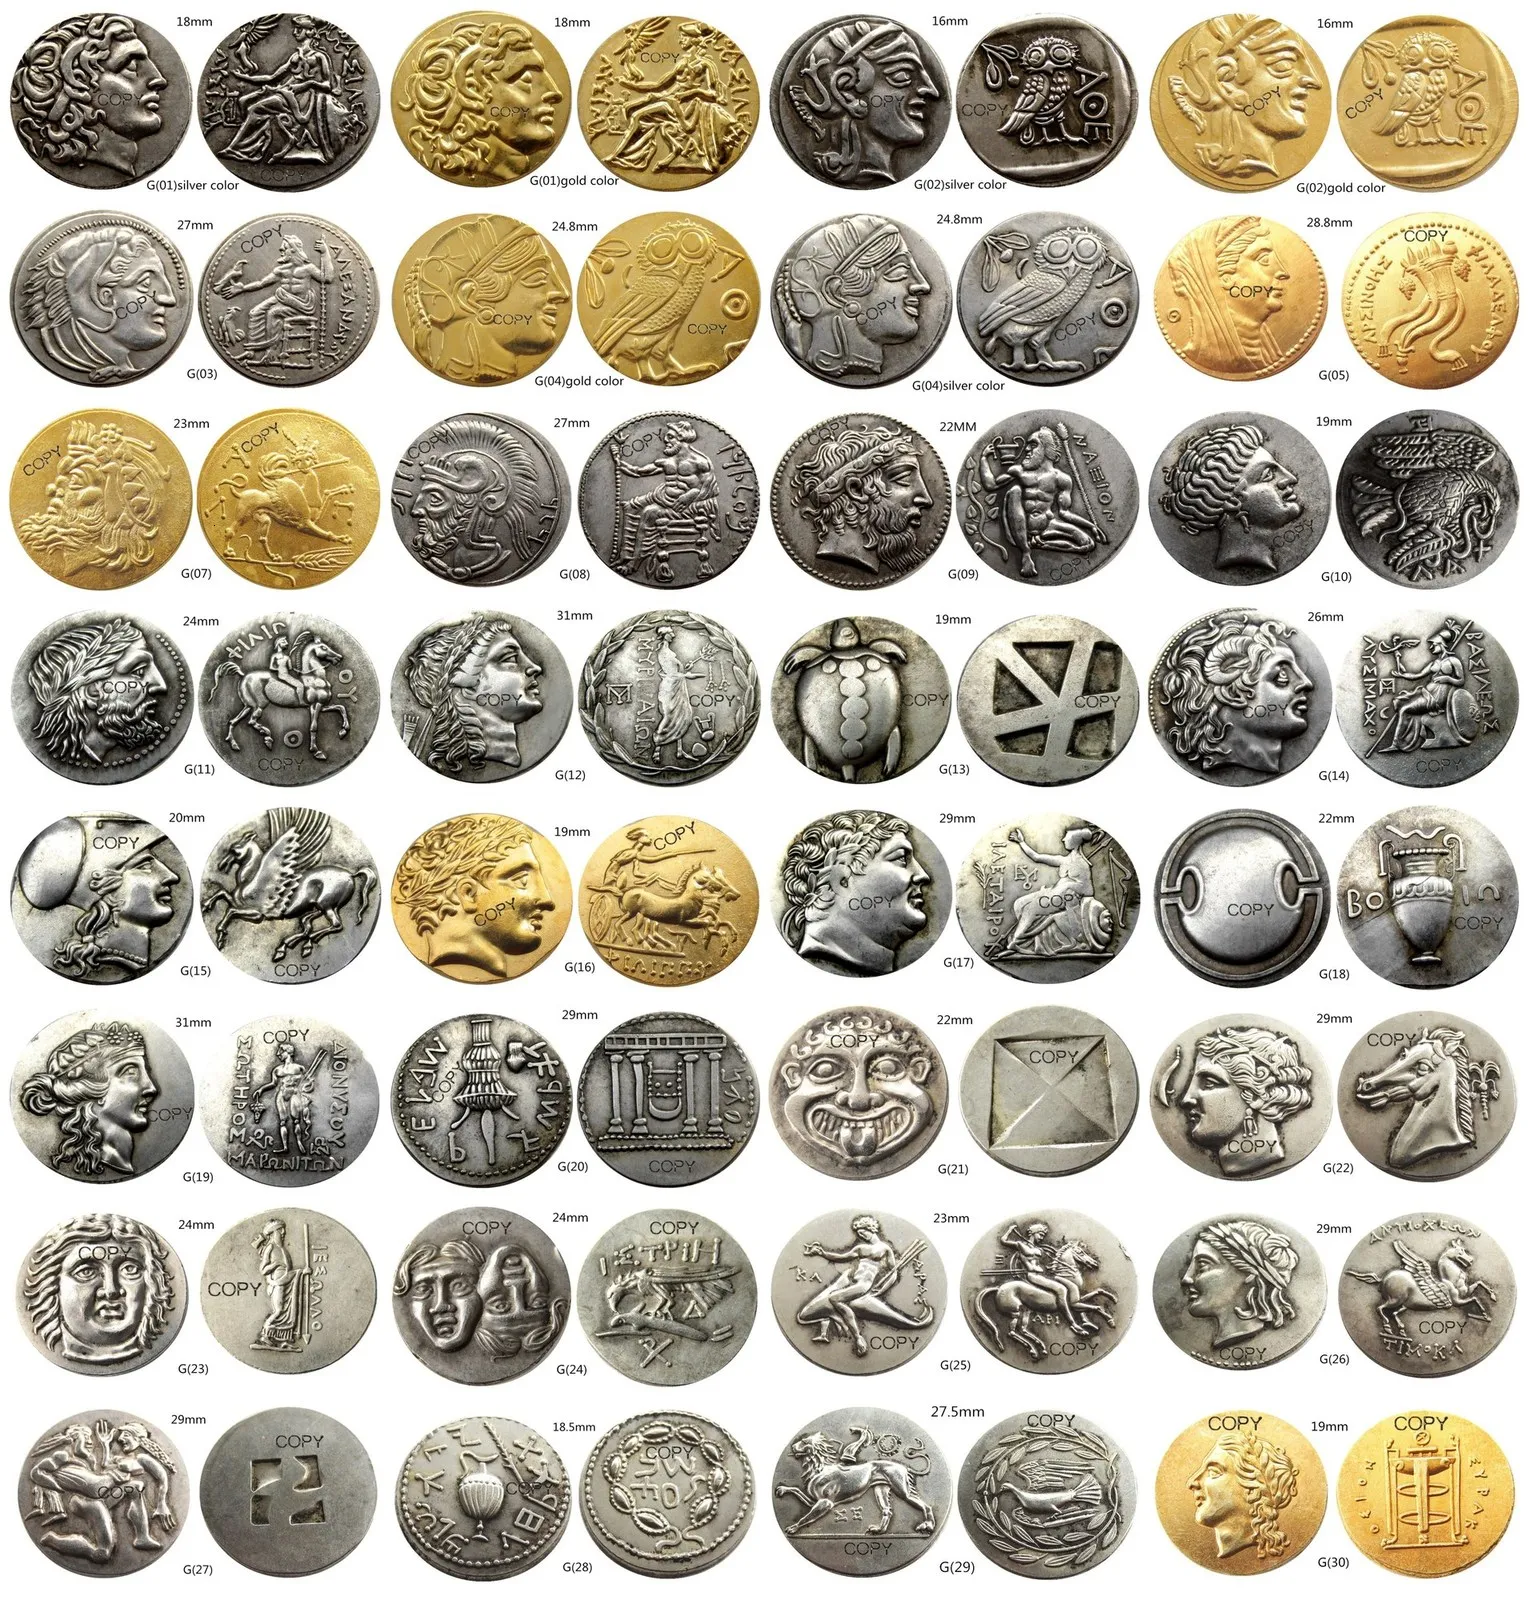 Dekorativa objekt Figurer grekiska och romerska antika mix silvergold pläterade kopieringsmynt 230701